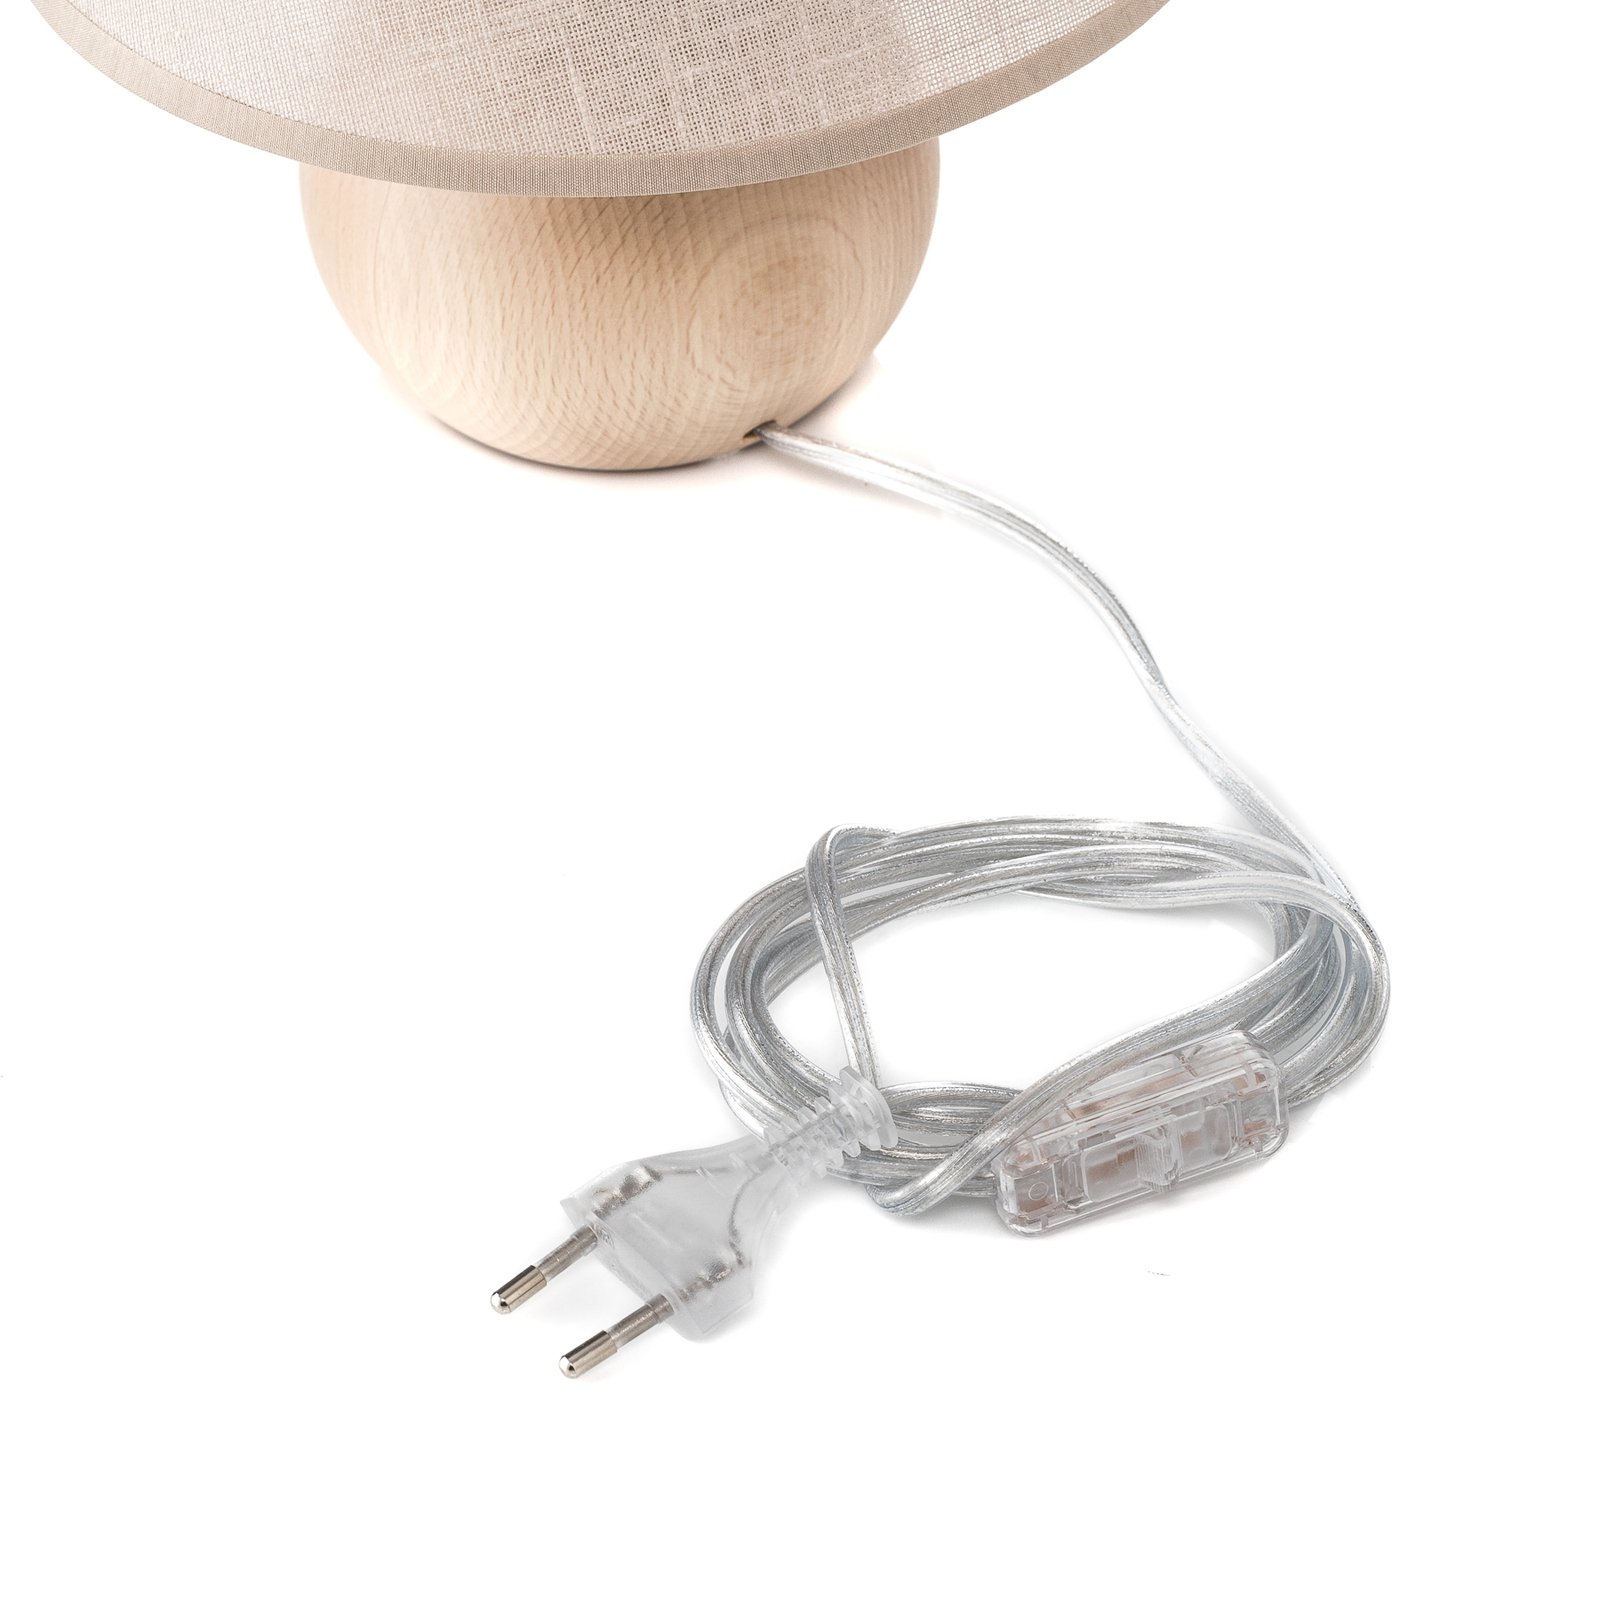 Envostar Gill stolní lampa, dřevo přírodní/béžová